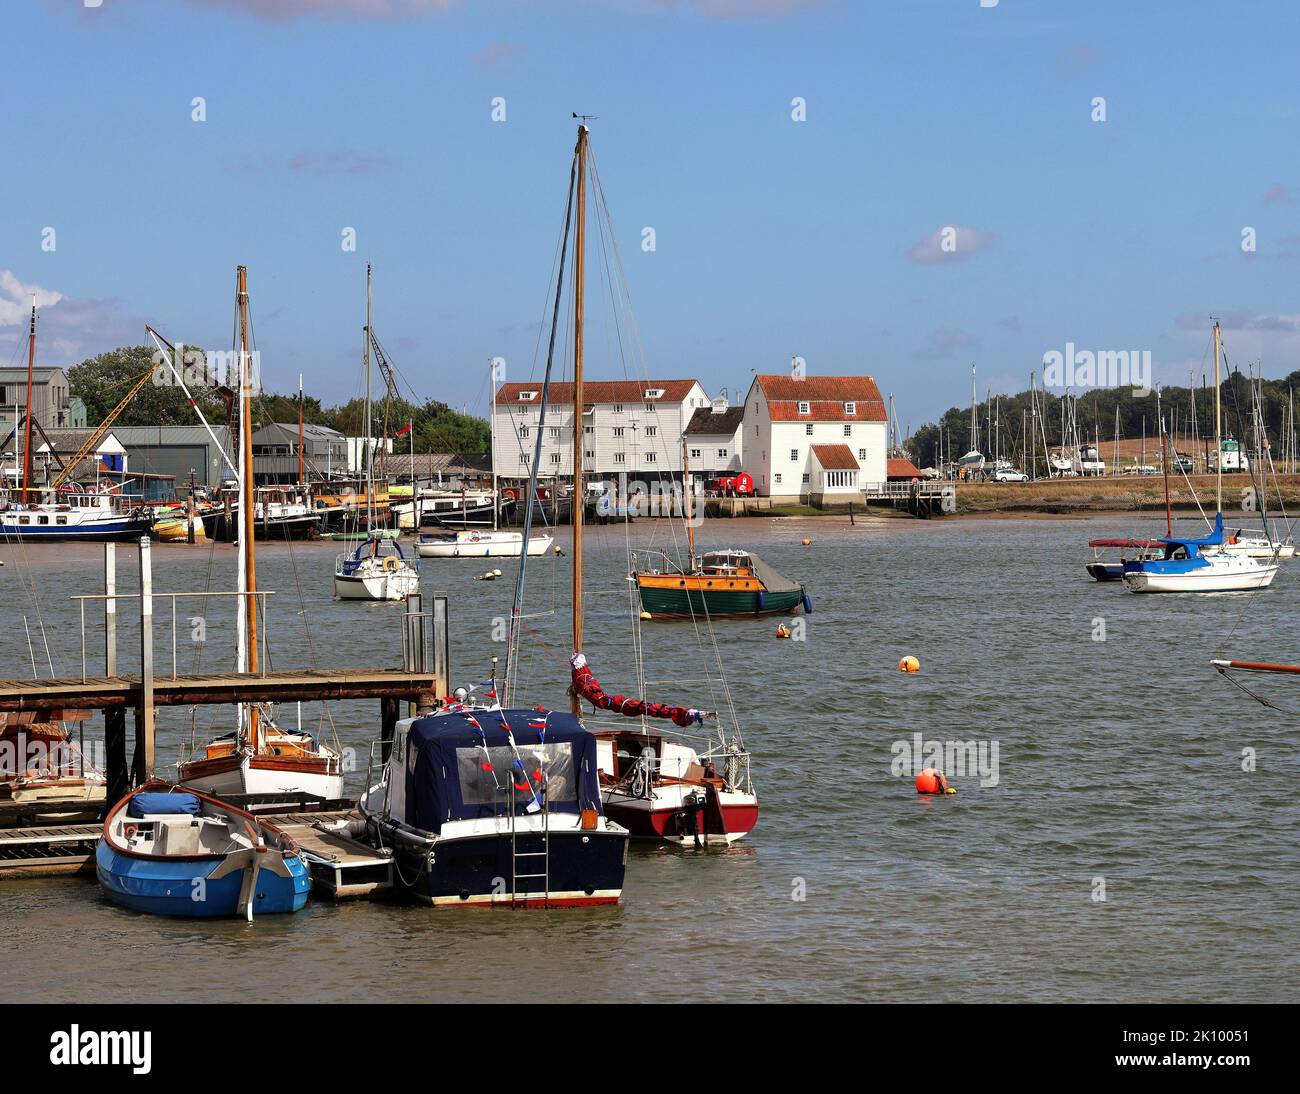 Ville côtière anglaise de Woodbridge sur la rivière Deben, Suffolk, East Anglia, Angleterre, avec des bateaux amarrés Banque D'Images